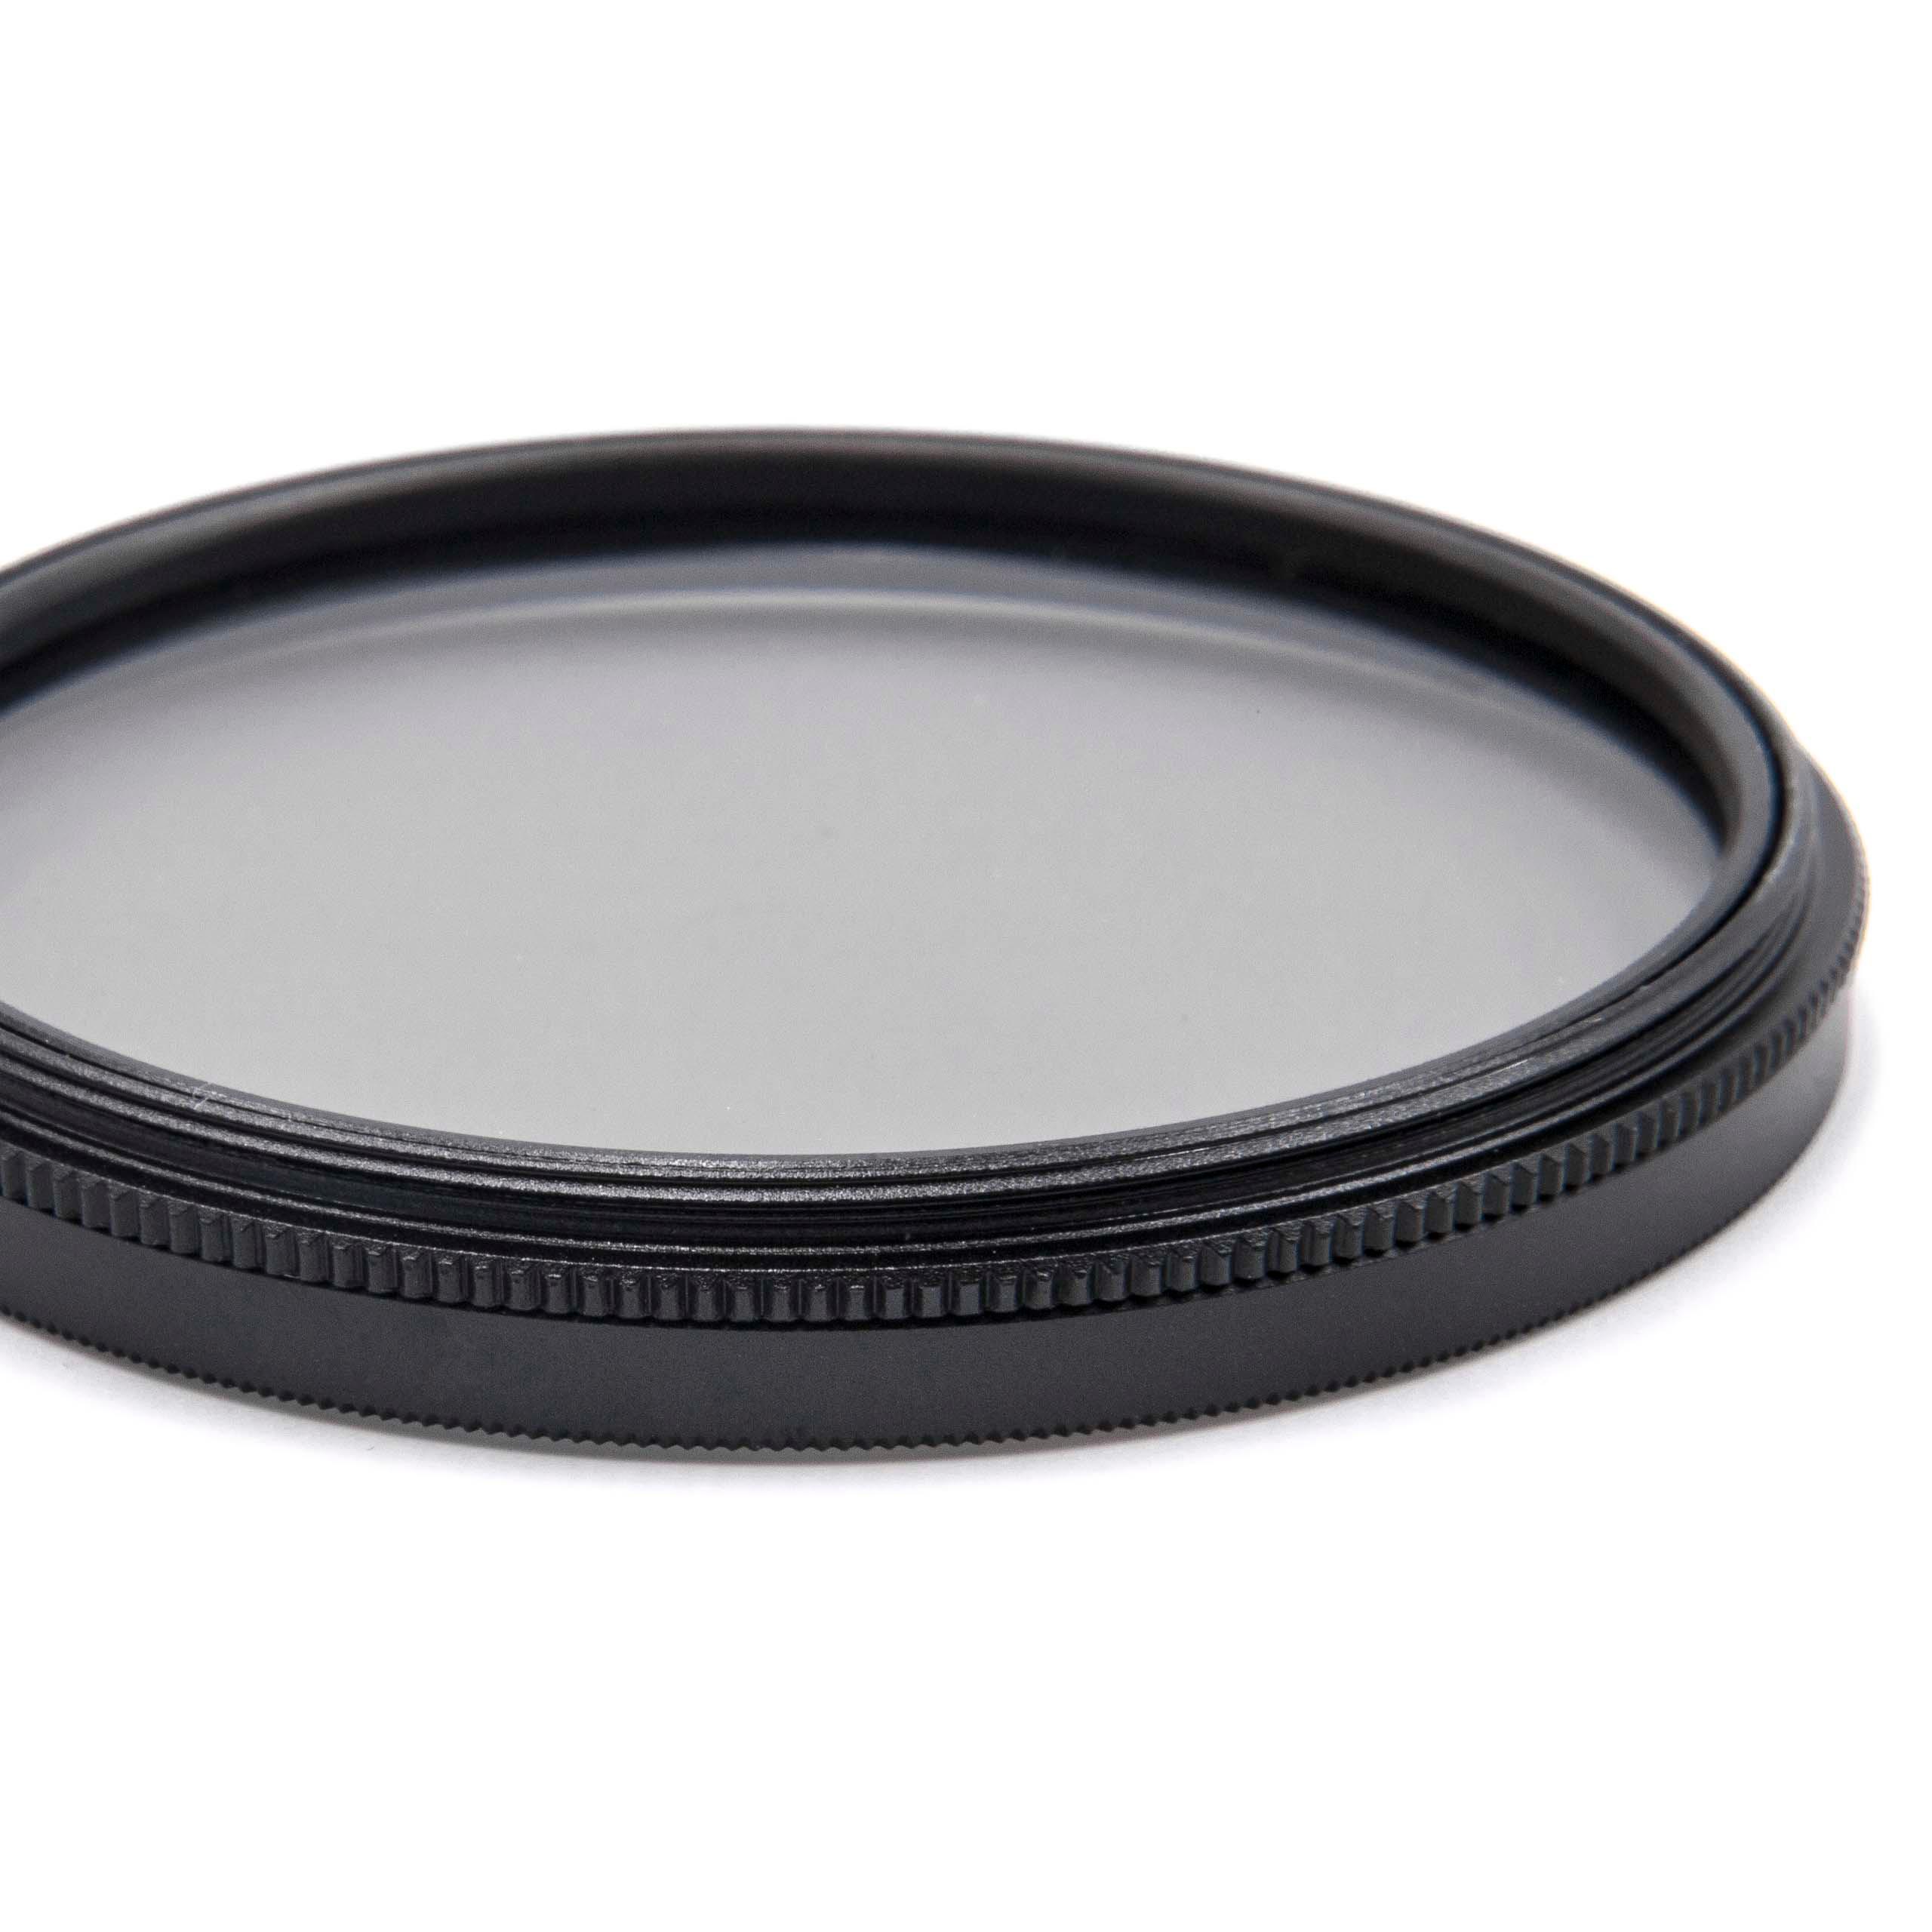 Filtro polarizador para objetivos y cámaras con rosca de filtro de 58 mm - Filtro CPL